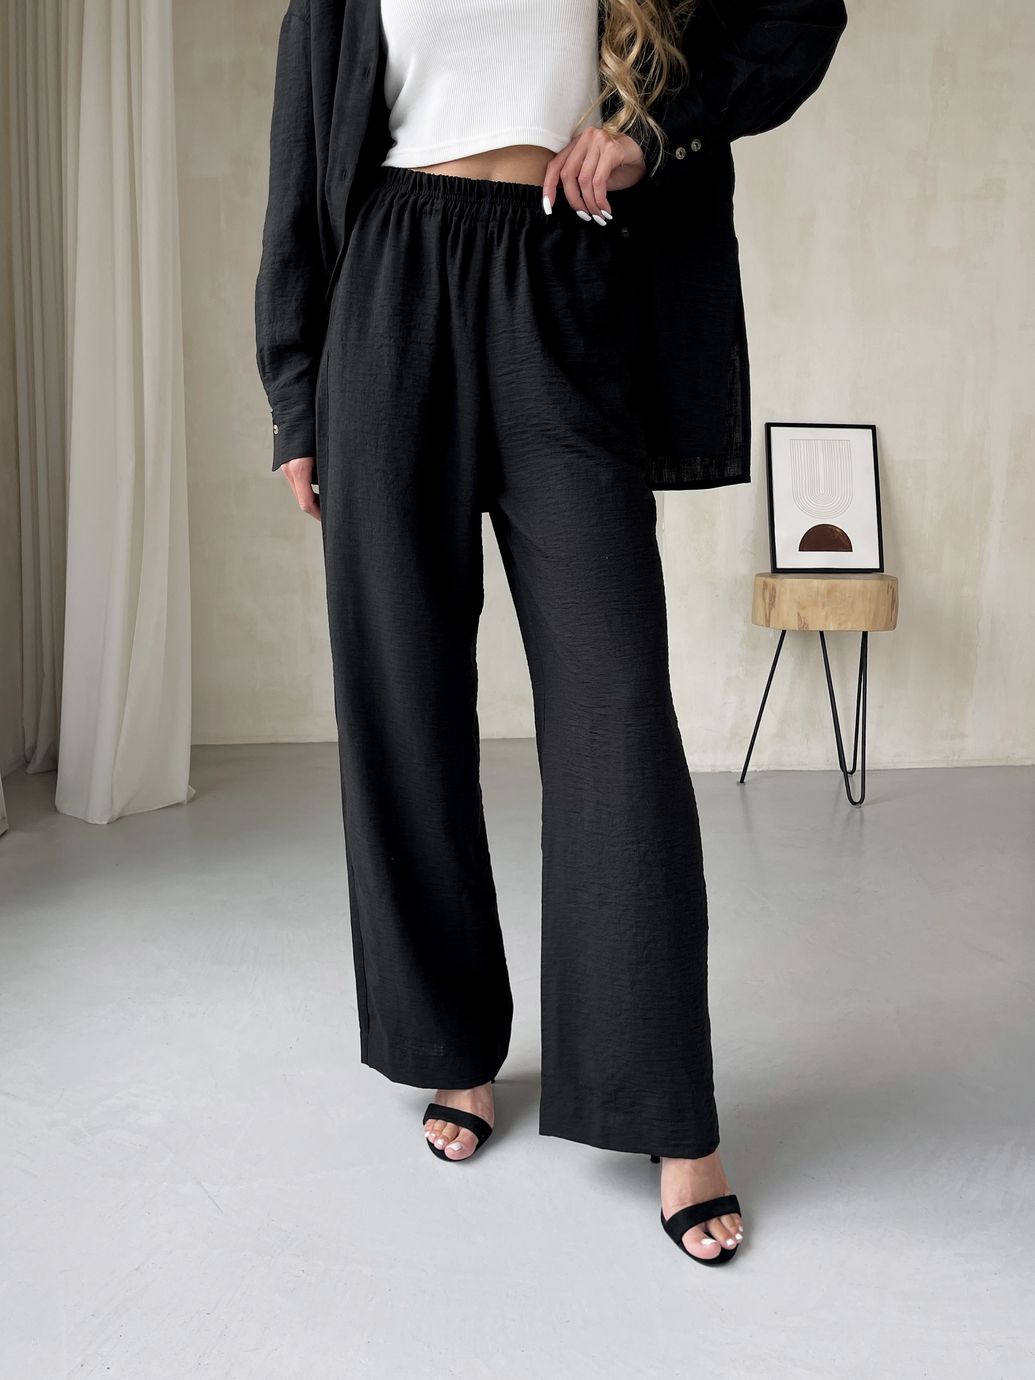 Купить Женский костюм с широкими штанами и рубашкой из льна черный Merlini Лечче 100000541, размер 42-44 (S-M) в интернет-магазине